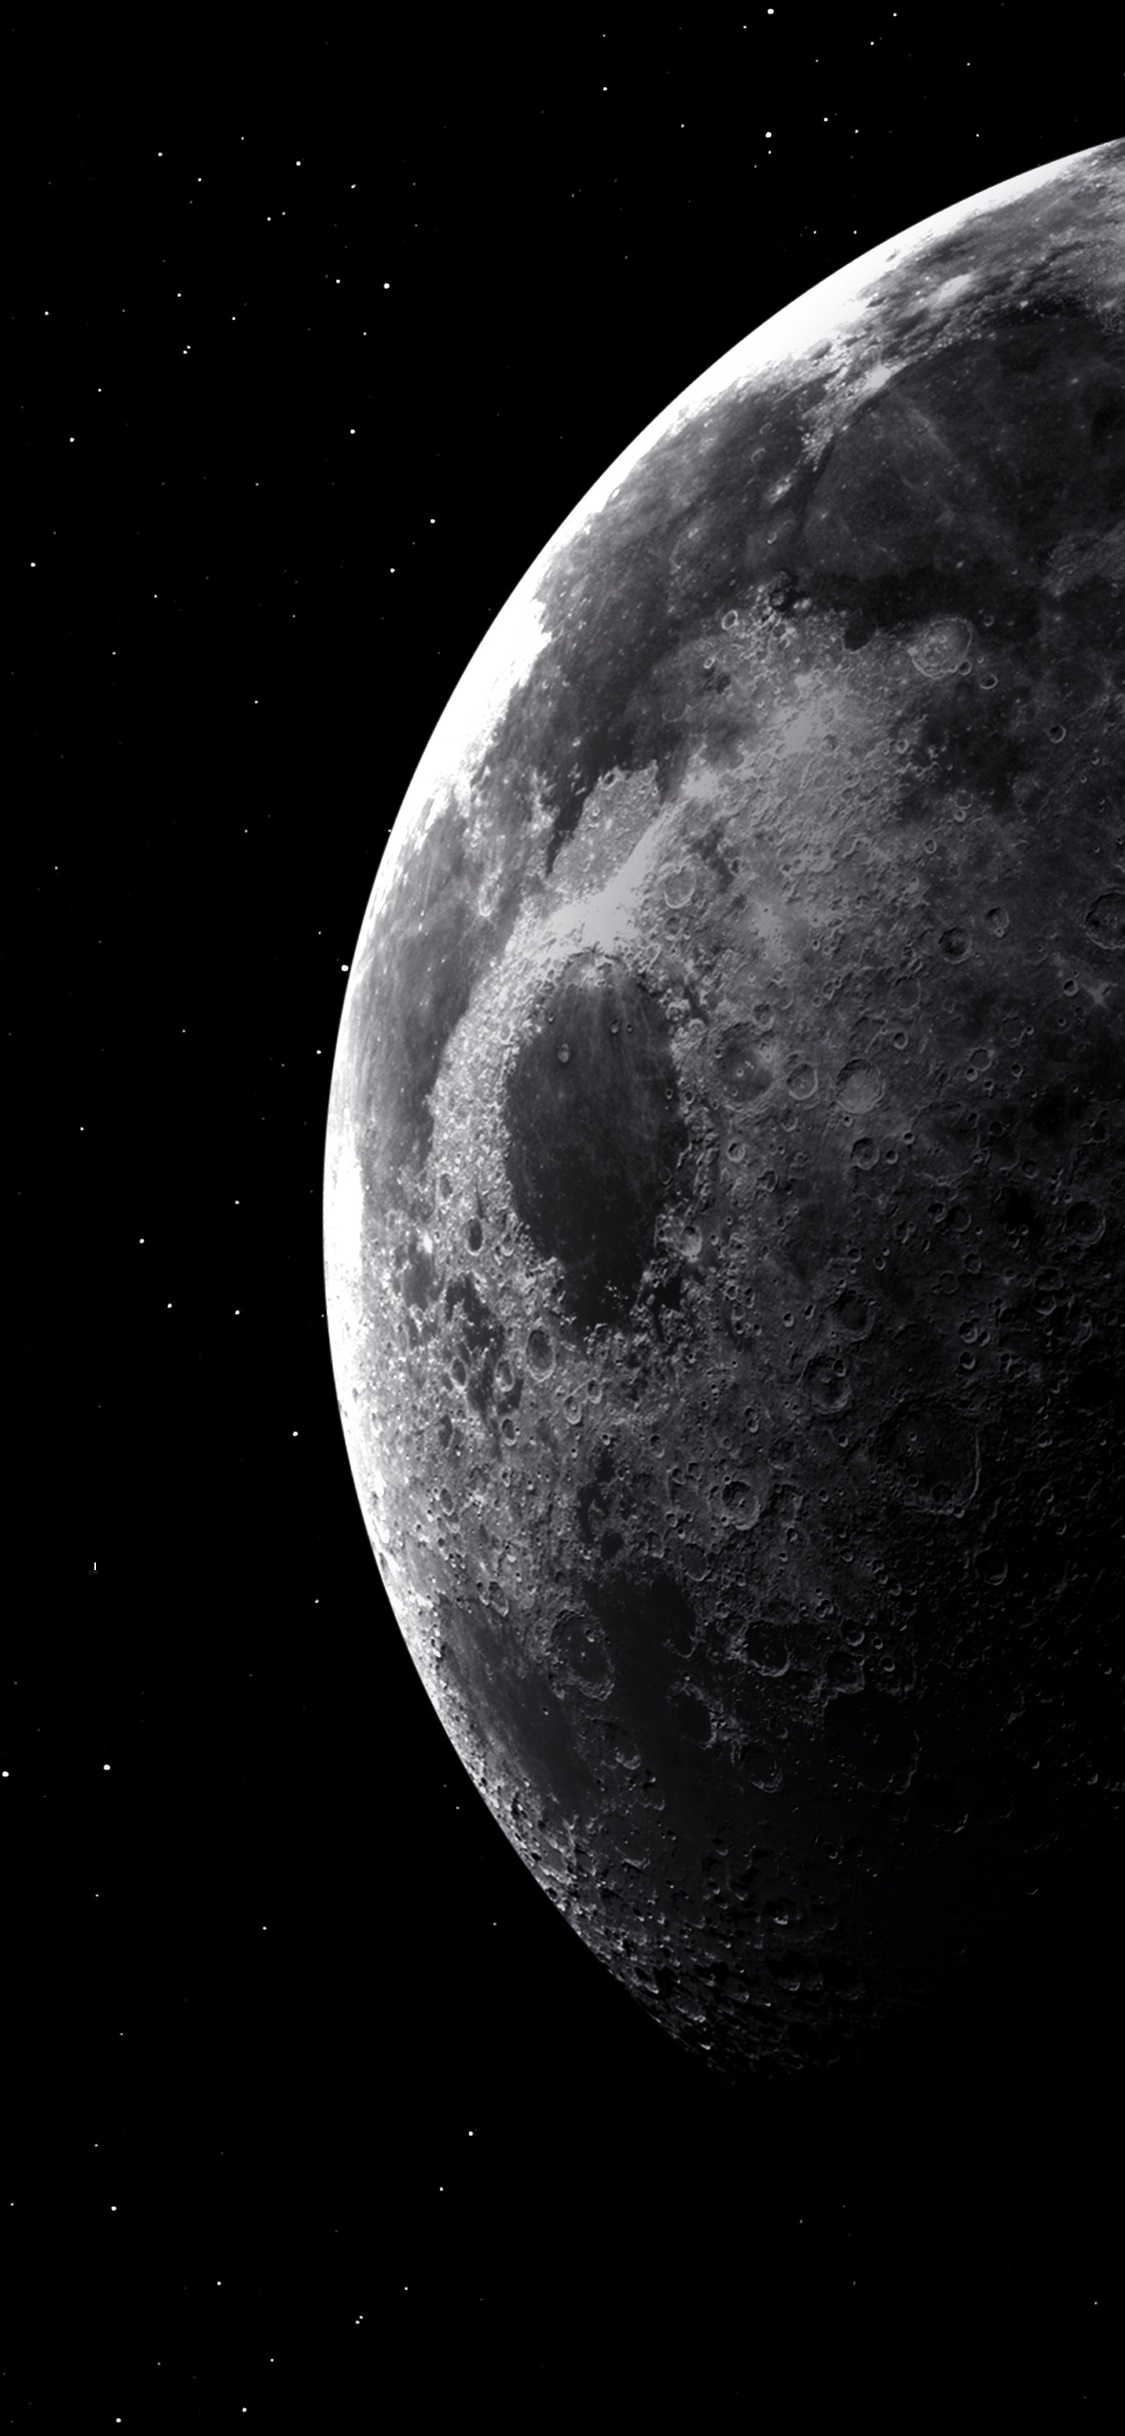 luna sfondi iphone,luna,fotografia,oggetto astronomico,spazio,atmosfera